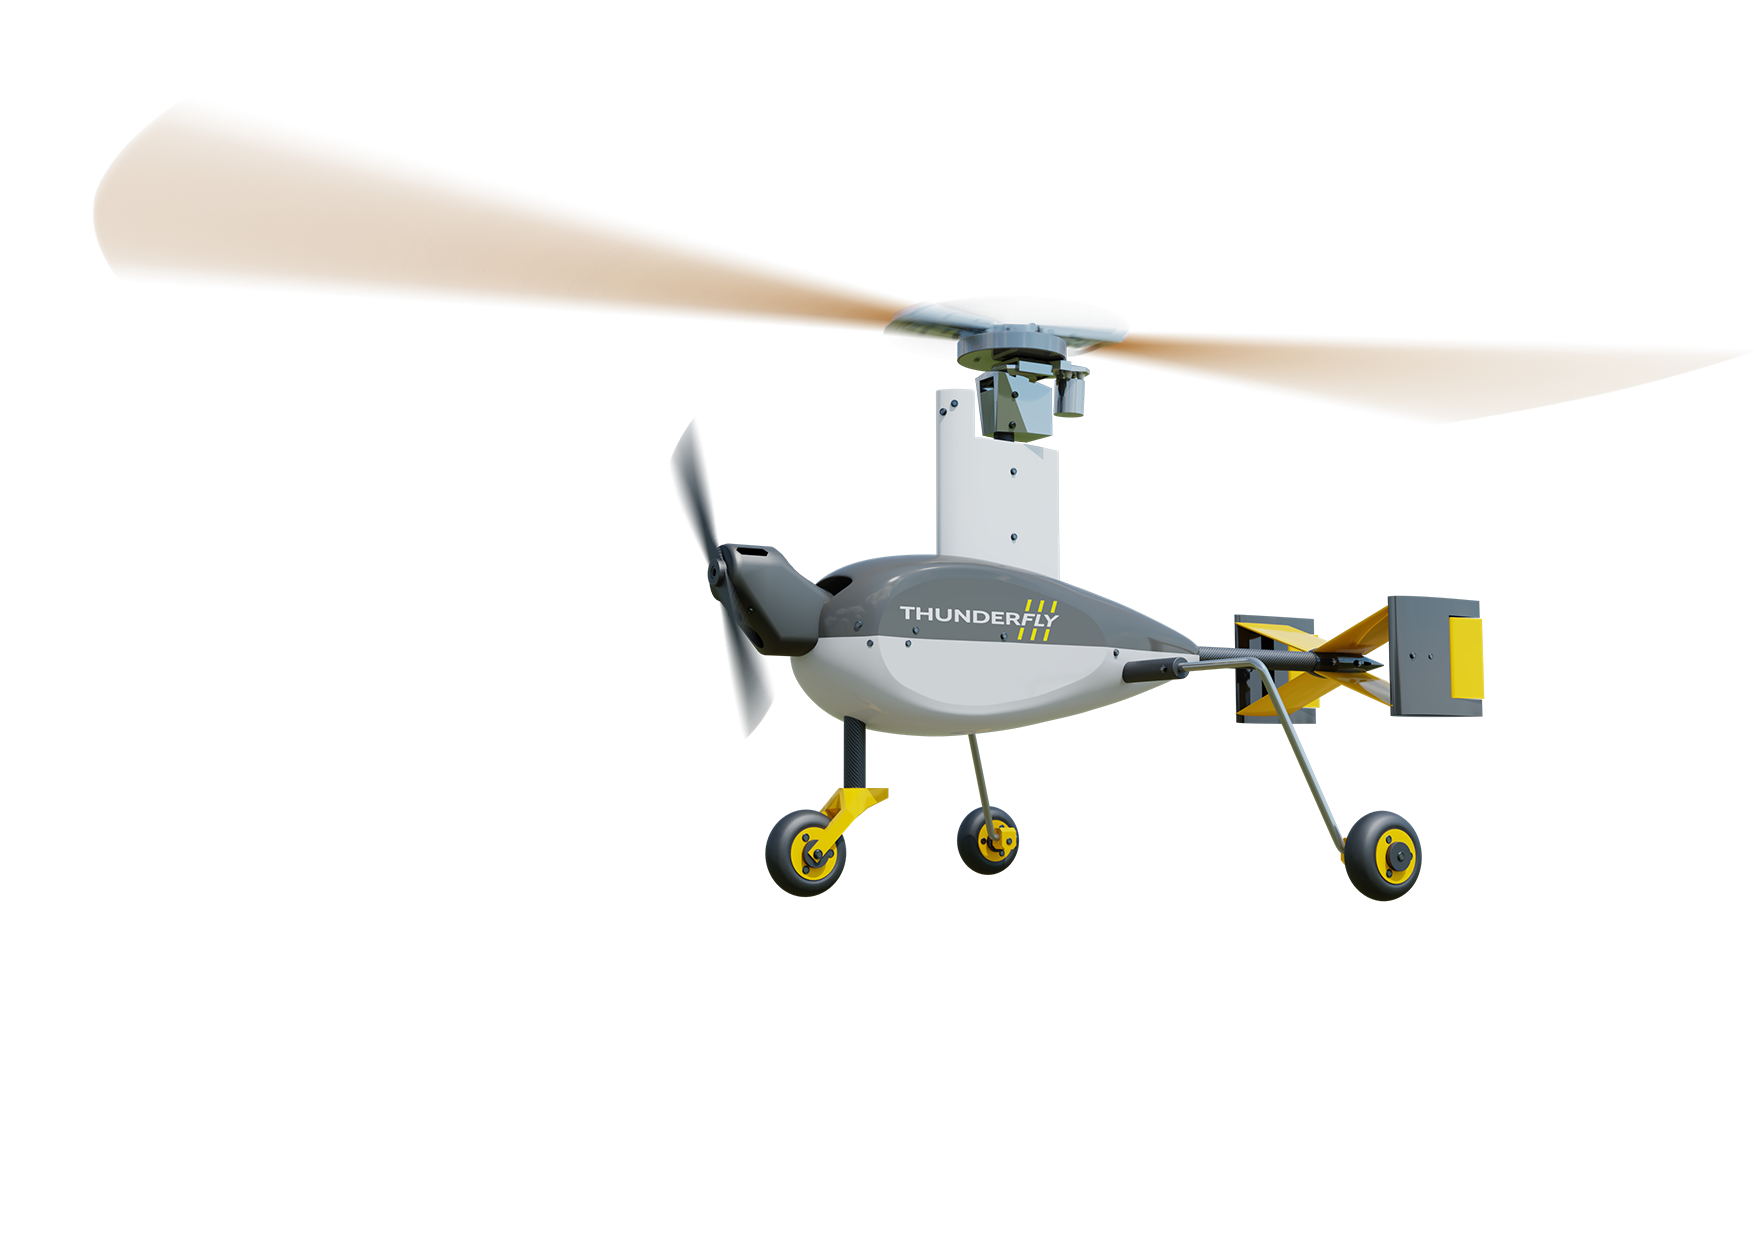 Autogyro drone in flight